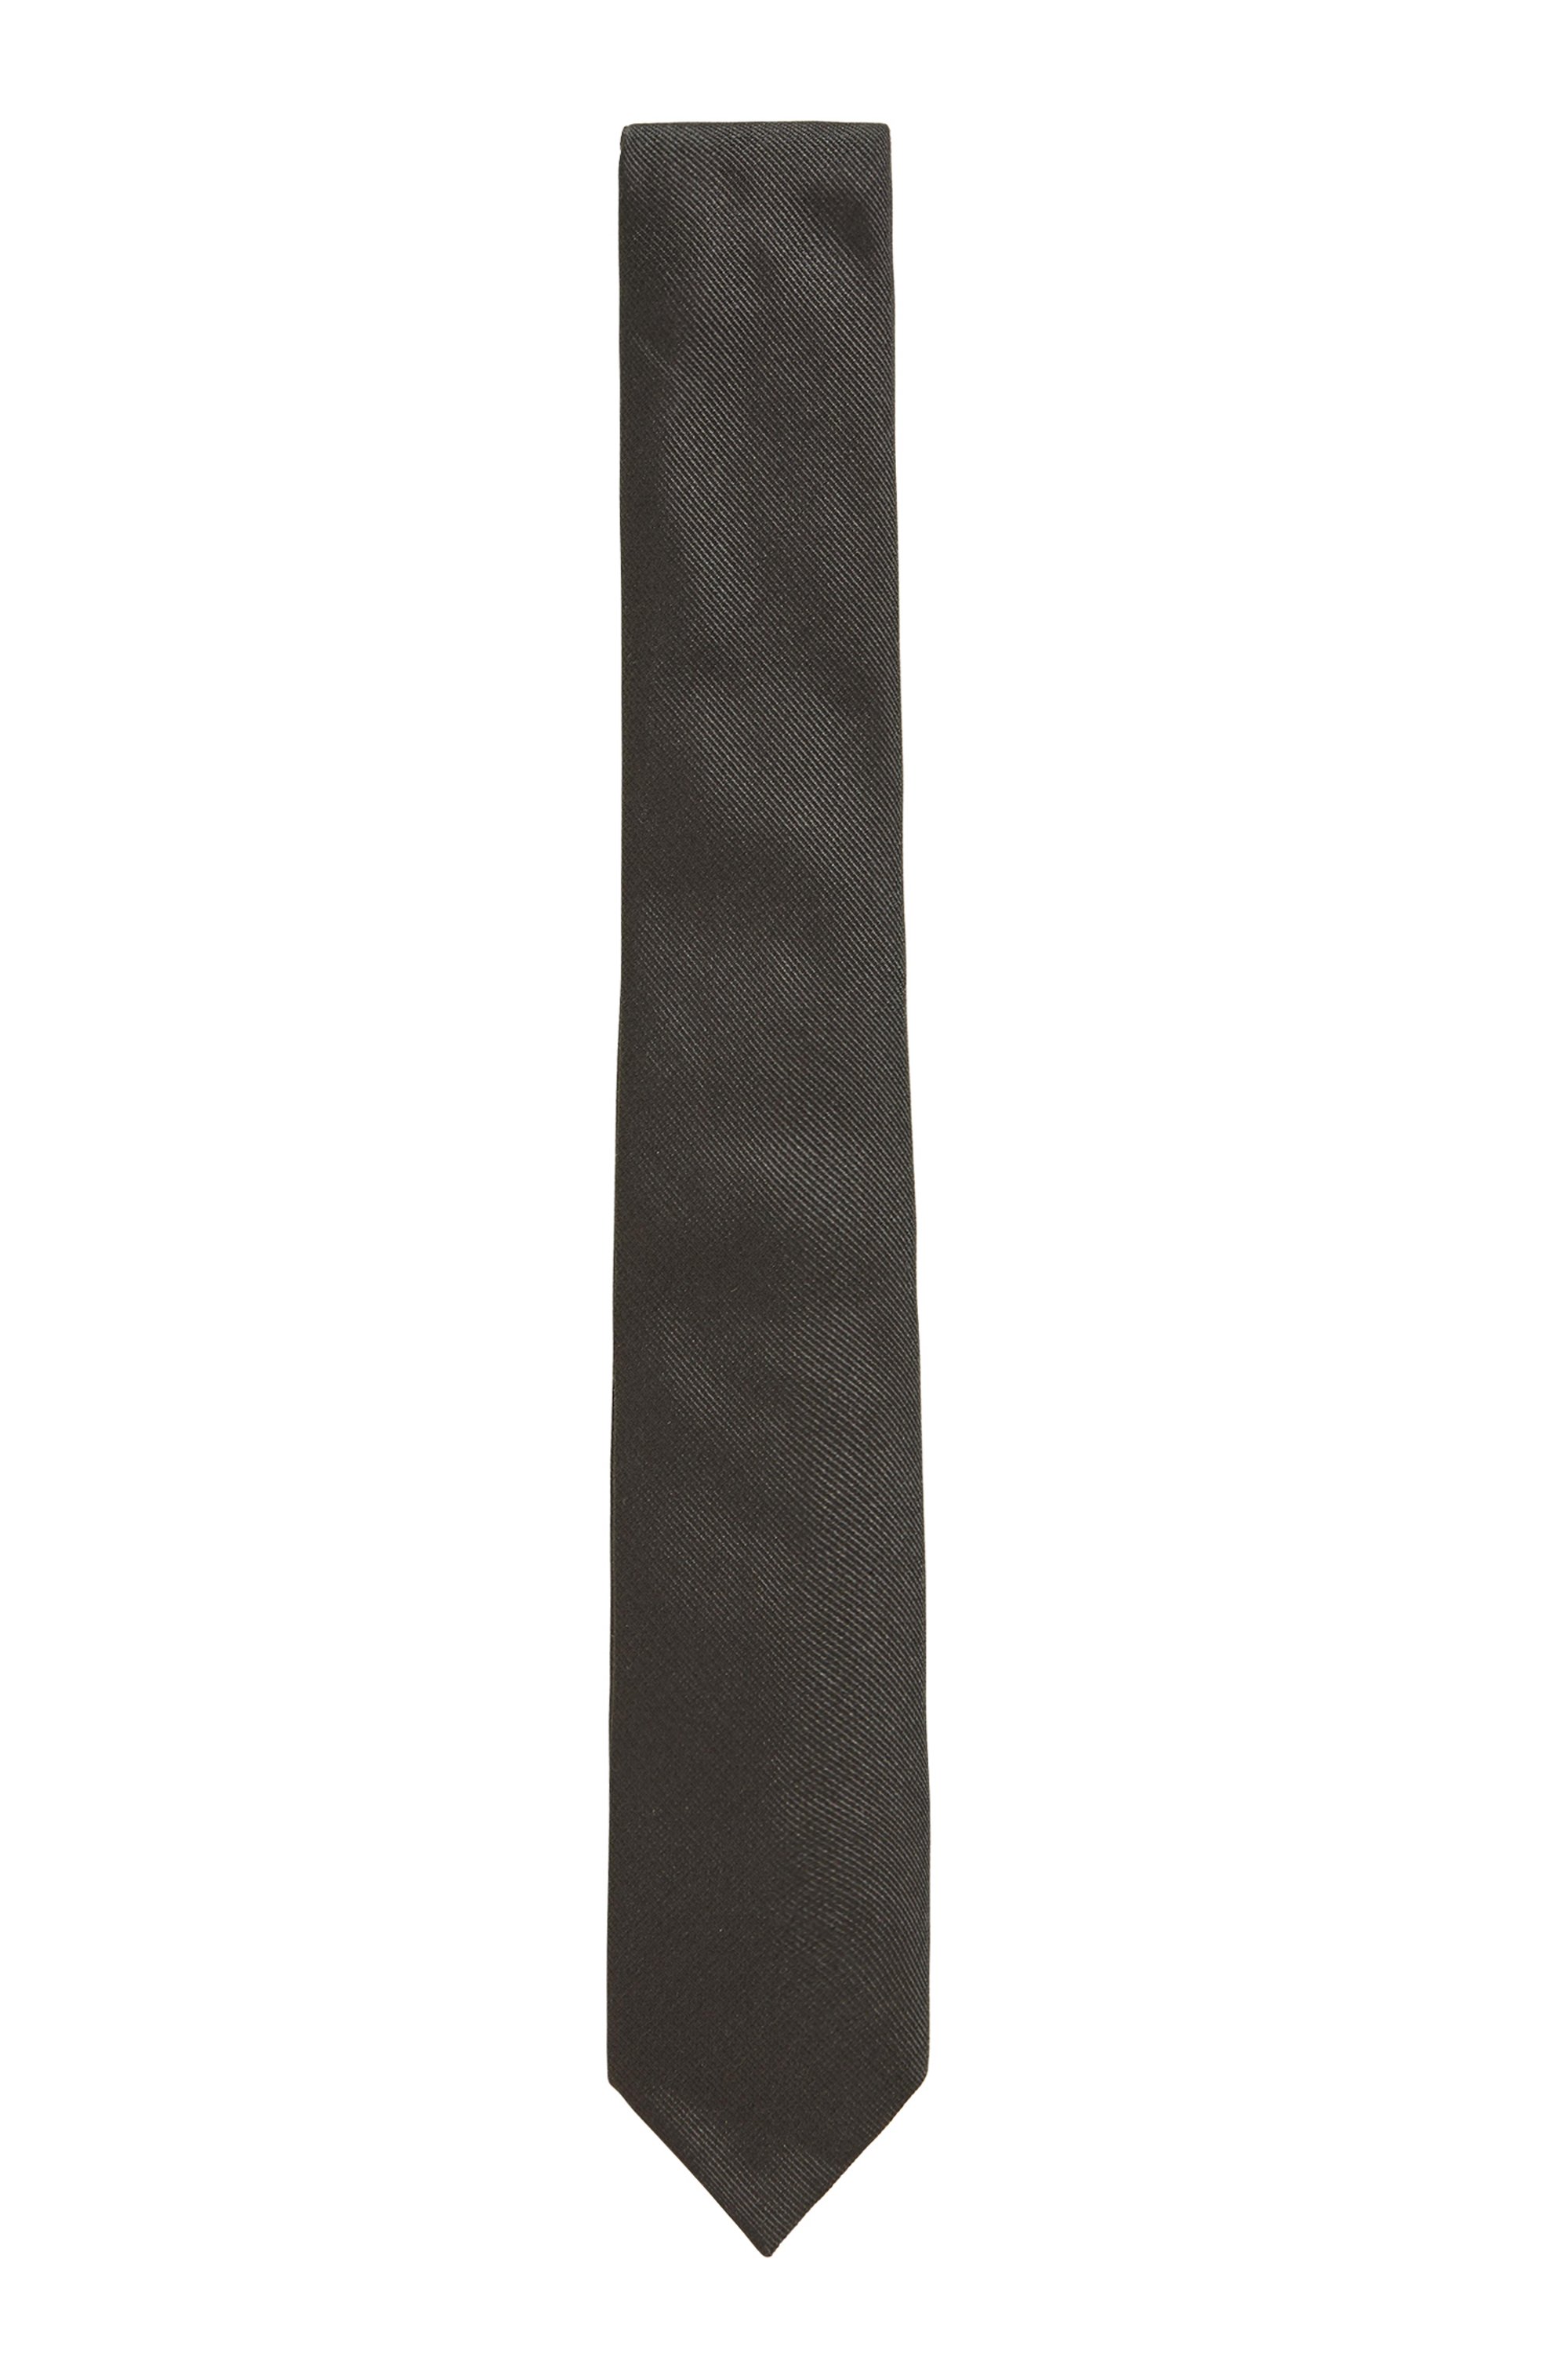 Gestructureerde stropdas van Italiaanse zijde met jacquardstructuur, Donkergroen